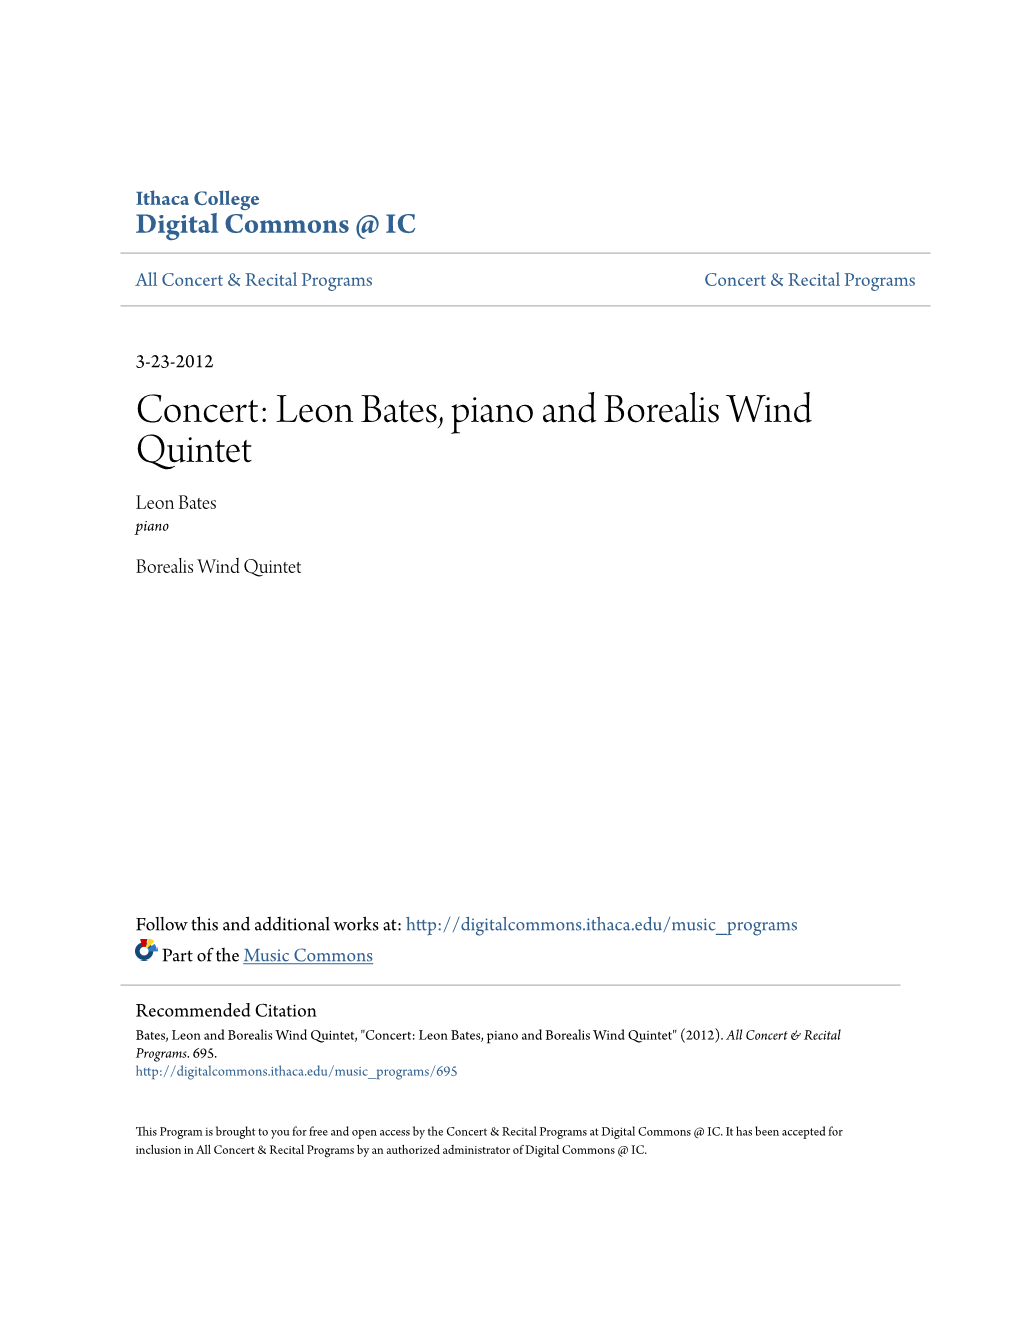 Concert: Leon Bates, Piano and Borealis Wind Quintet Leon Bates Piano